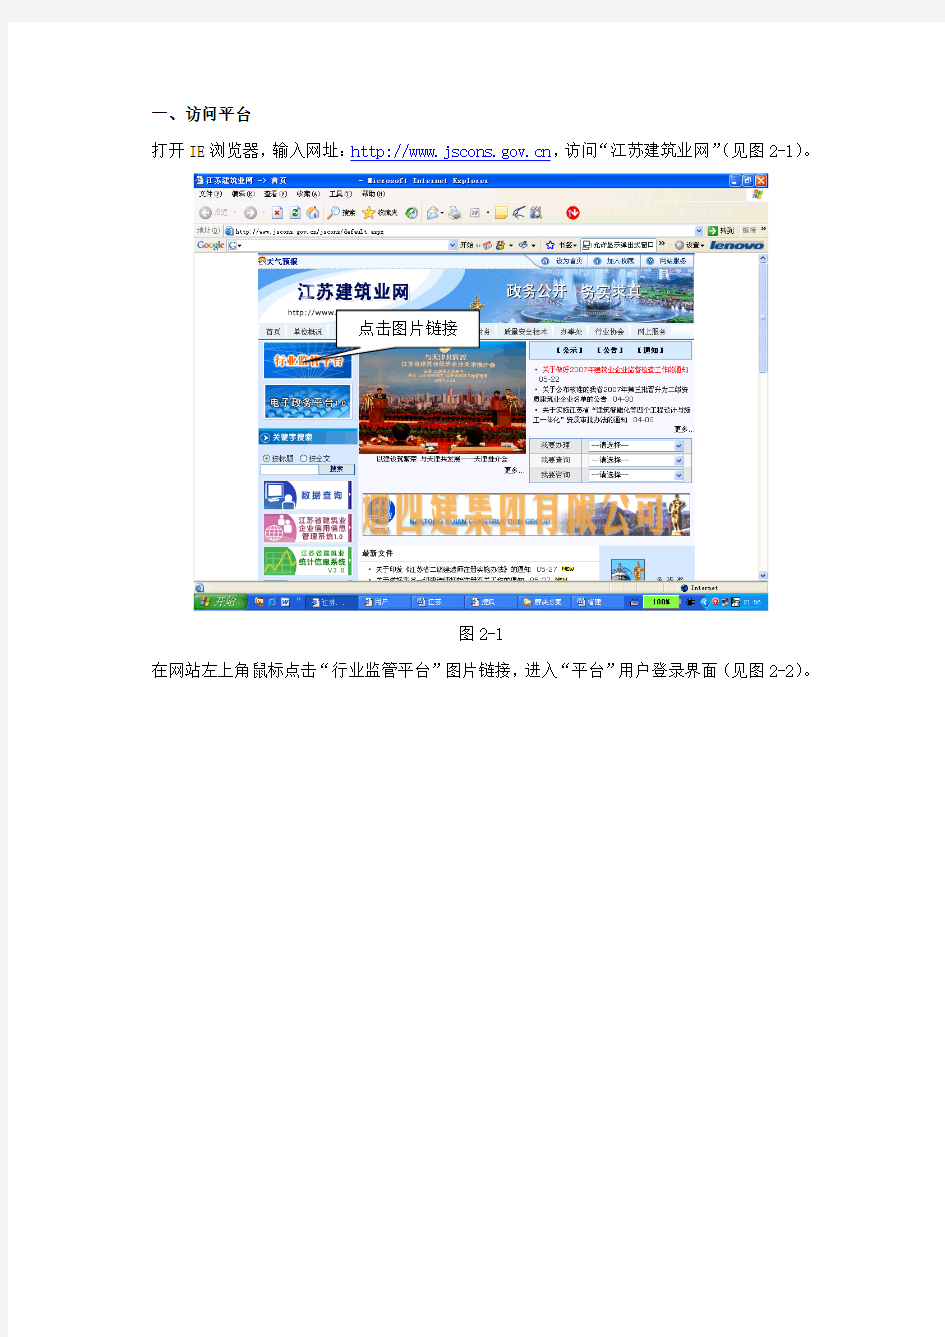 《江苏省建筑业监管信息平台》用户手册